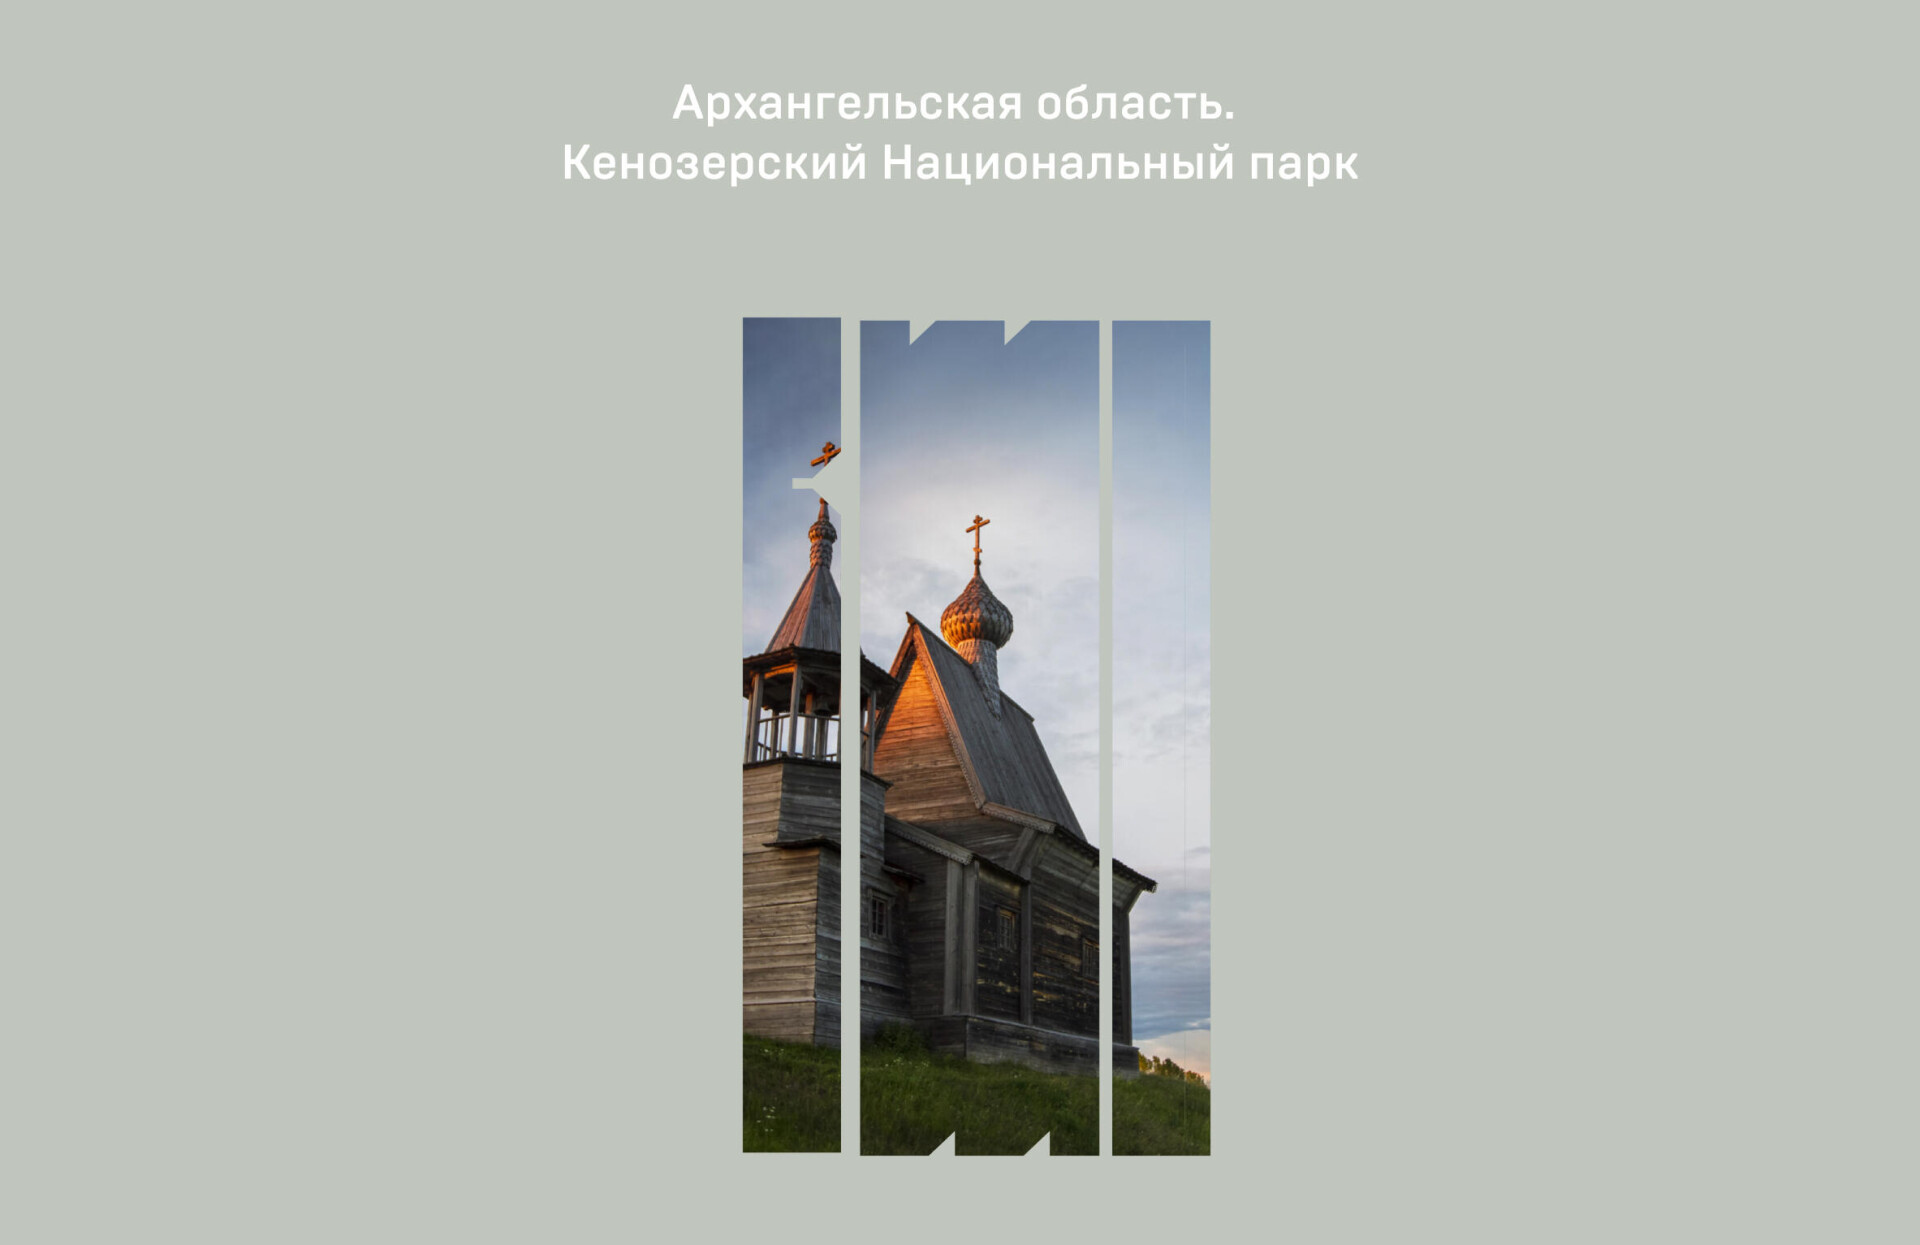 Архангельск—исконная северная природа и дерево - CO:CREATE 3